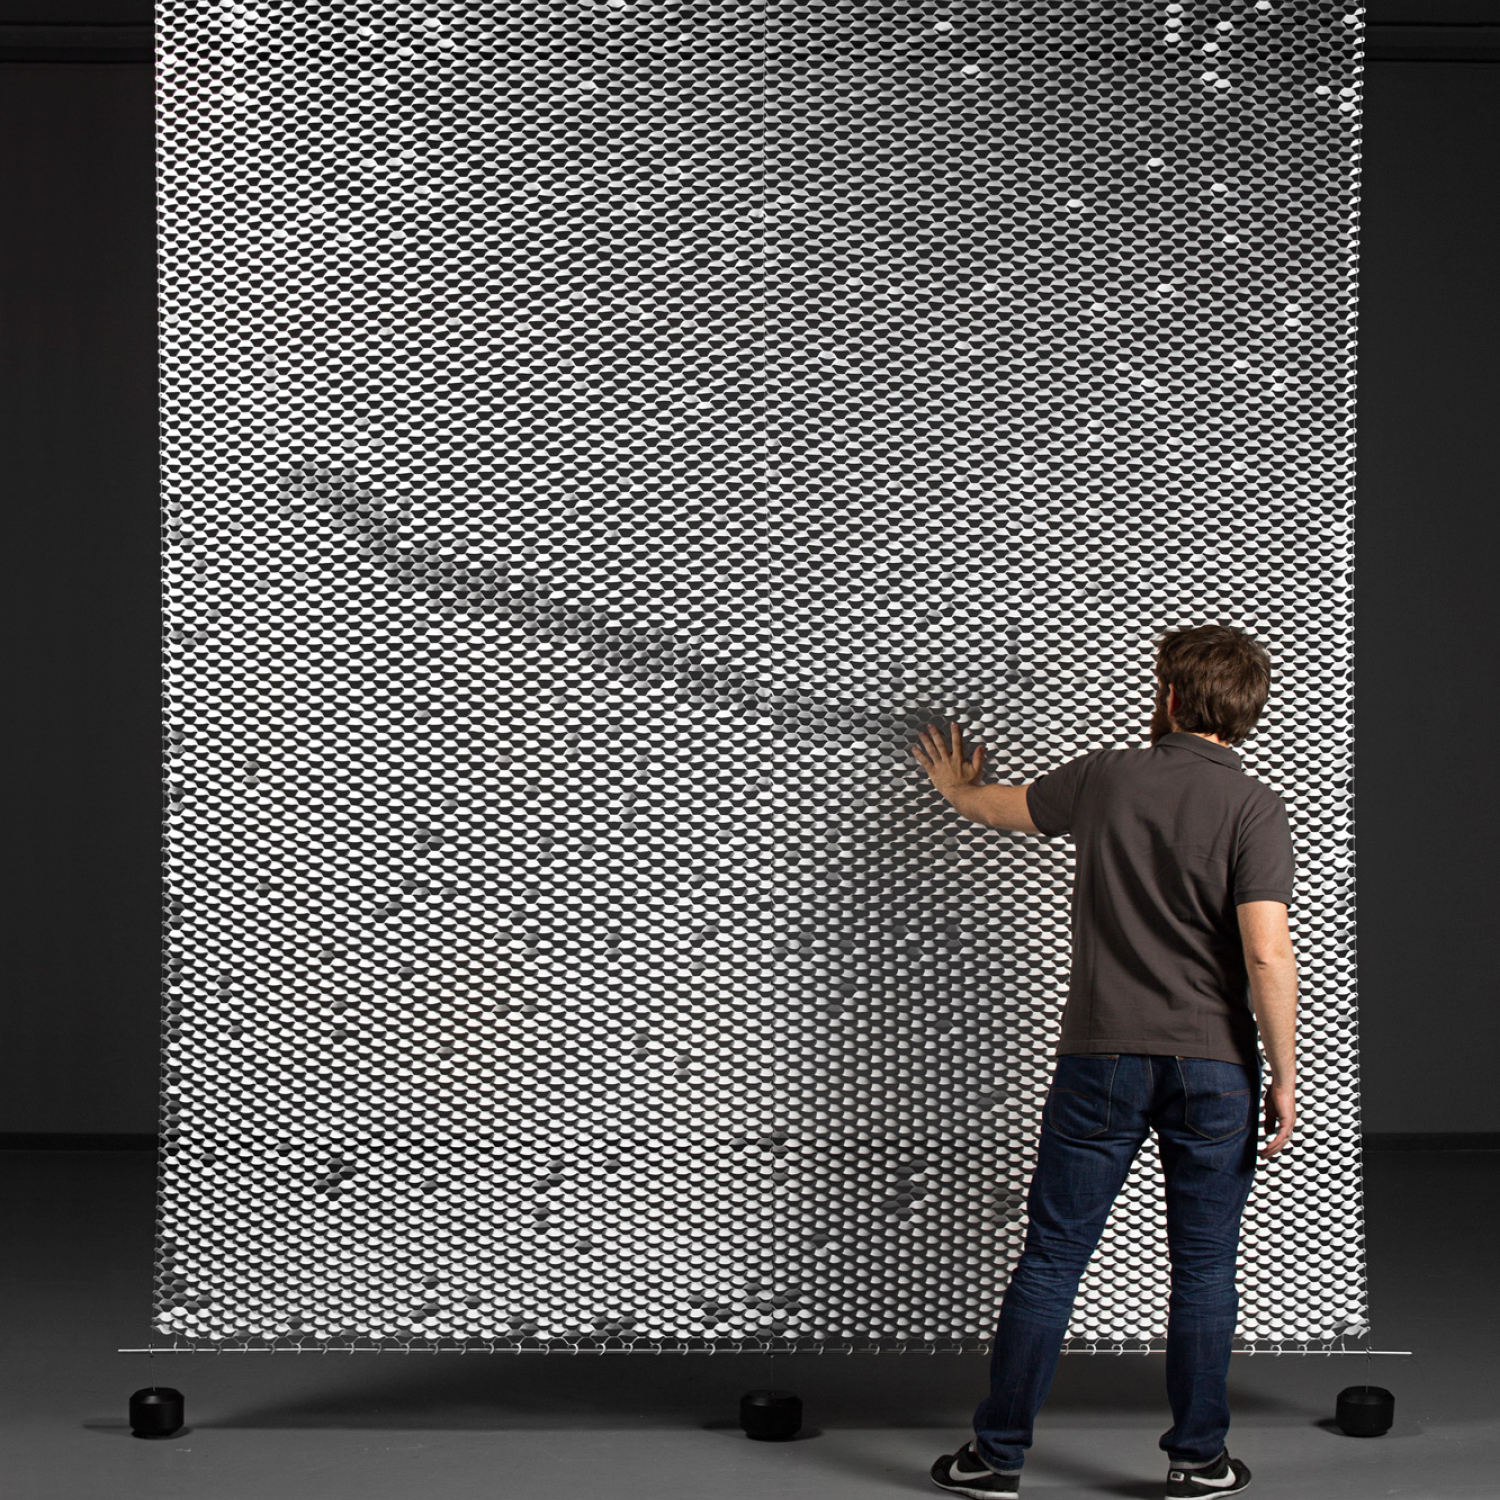 Интерактивная стена купить. Интерактивная стена. Интерактивные инсталляции. Интерактивная инсталляция на стене. Интерактивная стена на выставке.